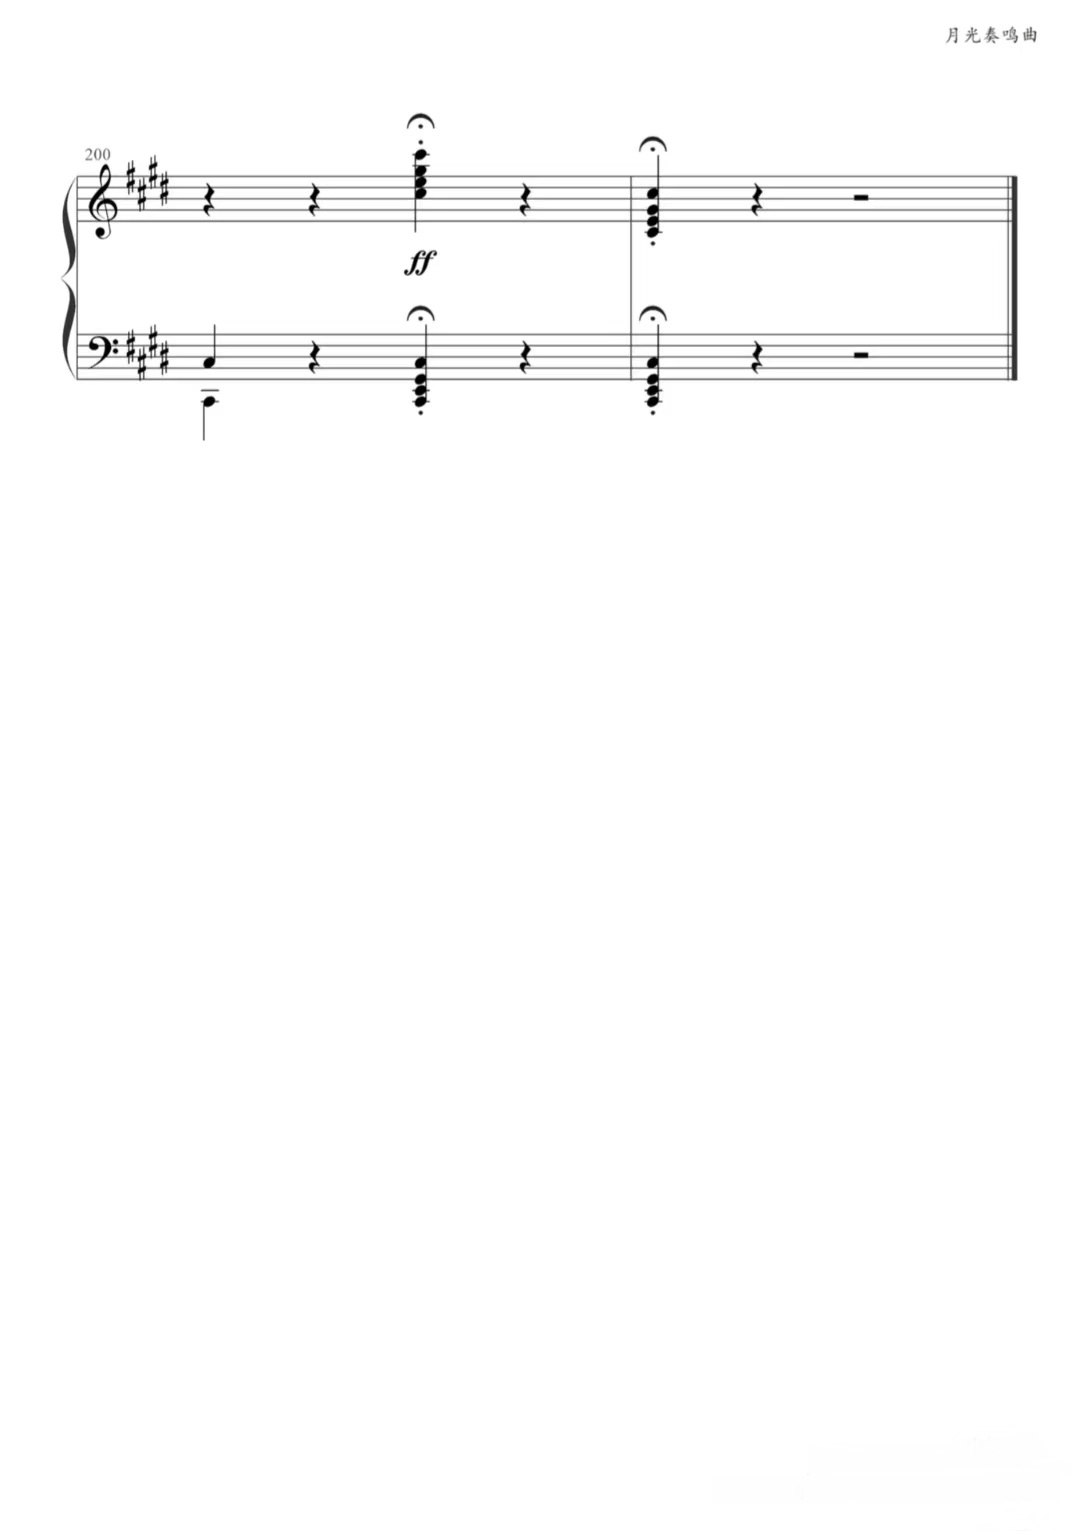 【月光曲】的钢琴谱简谱 – 第三乐章